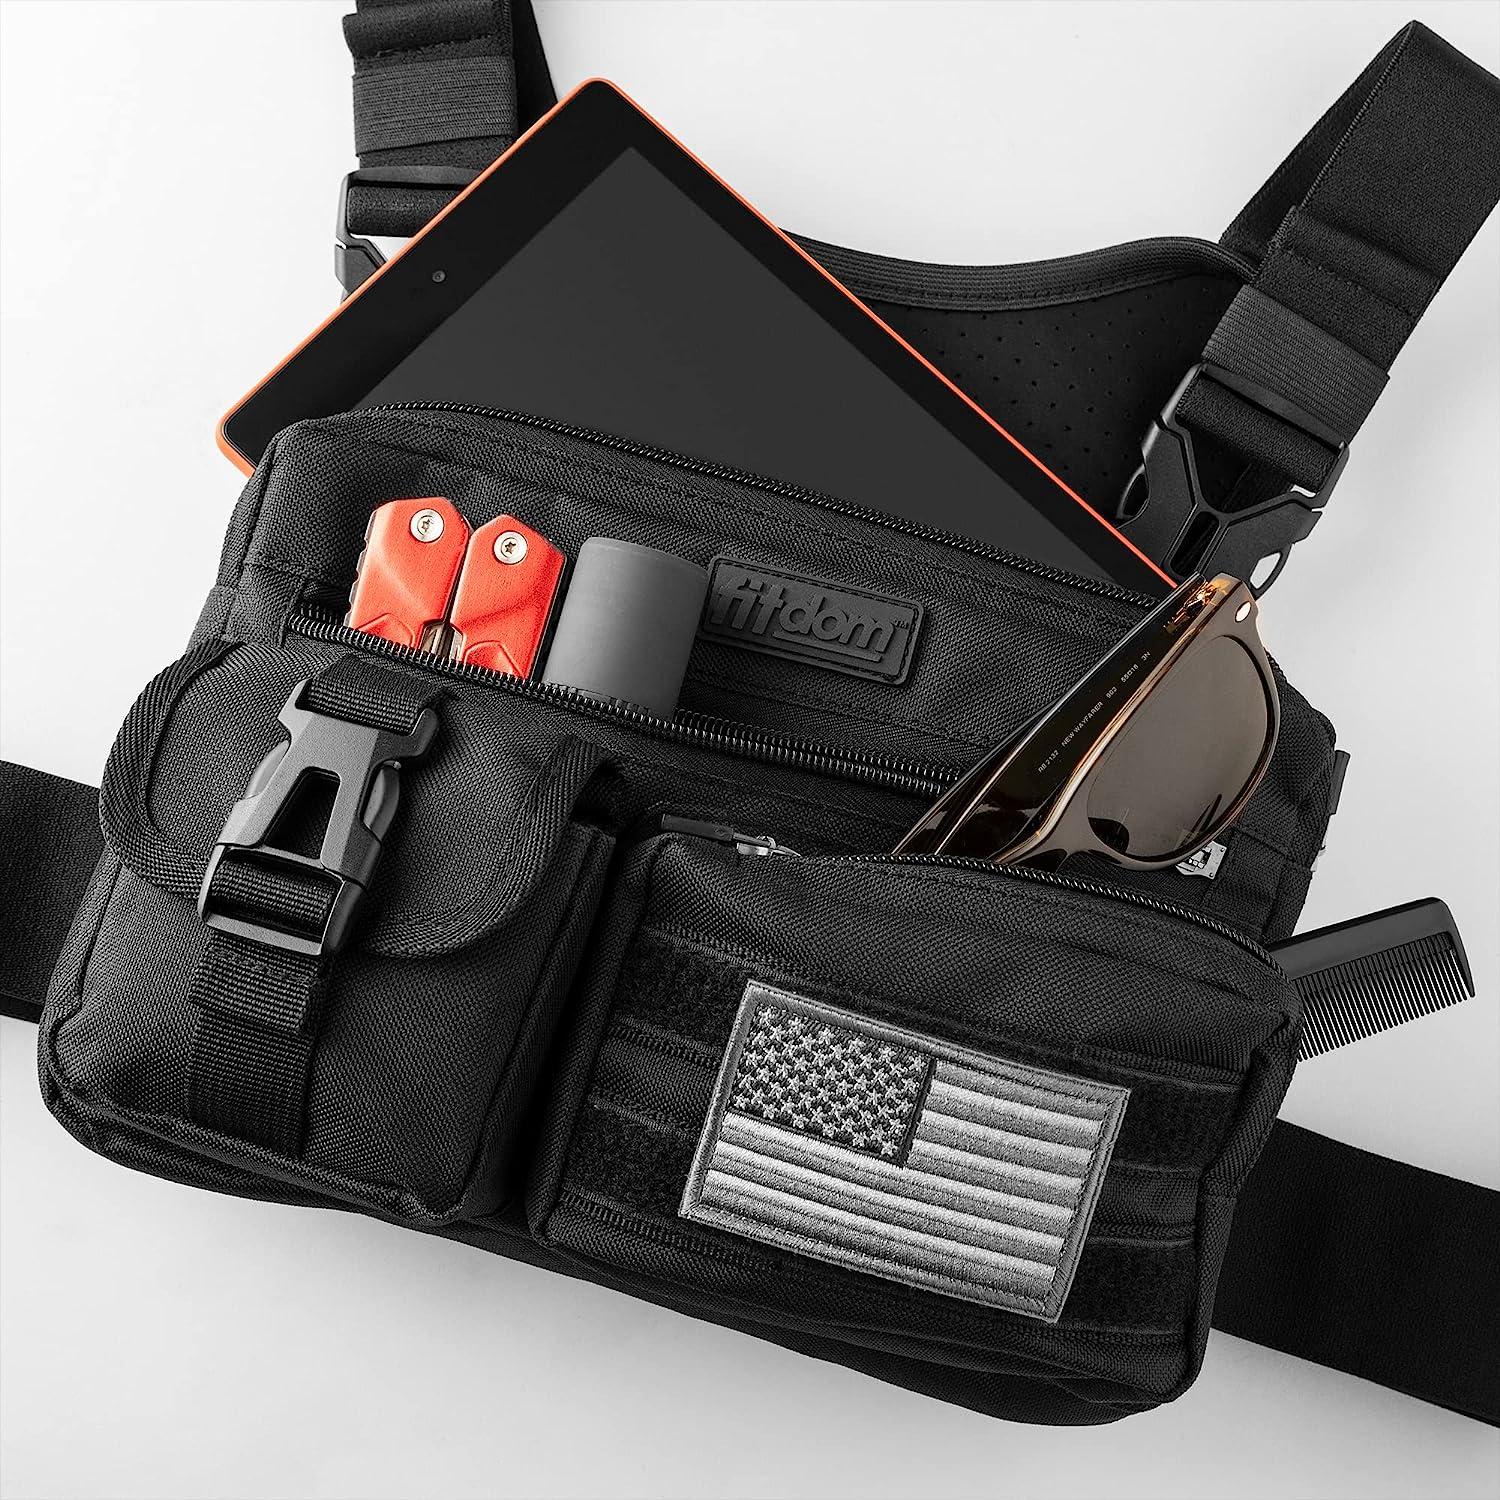  Fitdom Tactical Inspired Yoga Bag for Adult Men